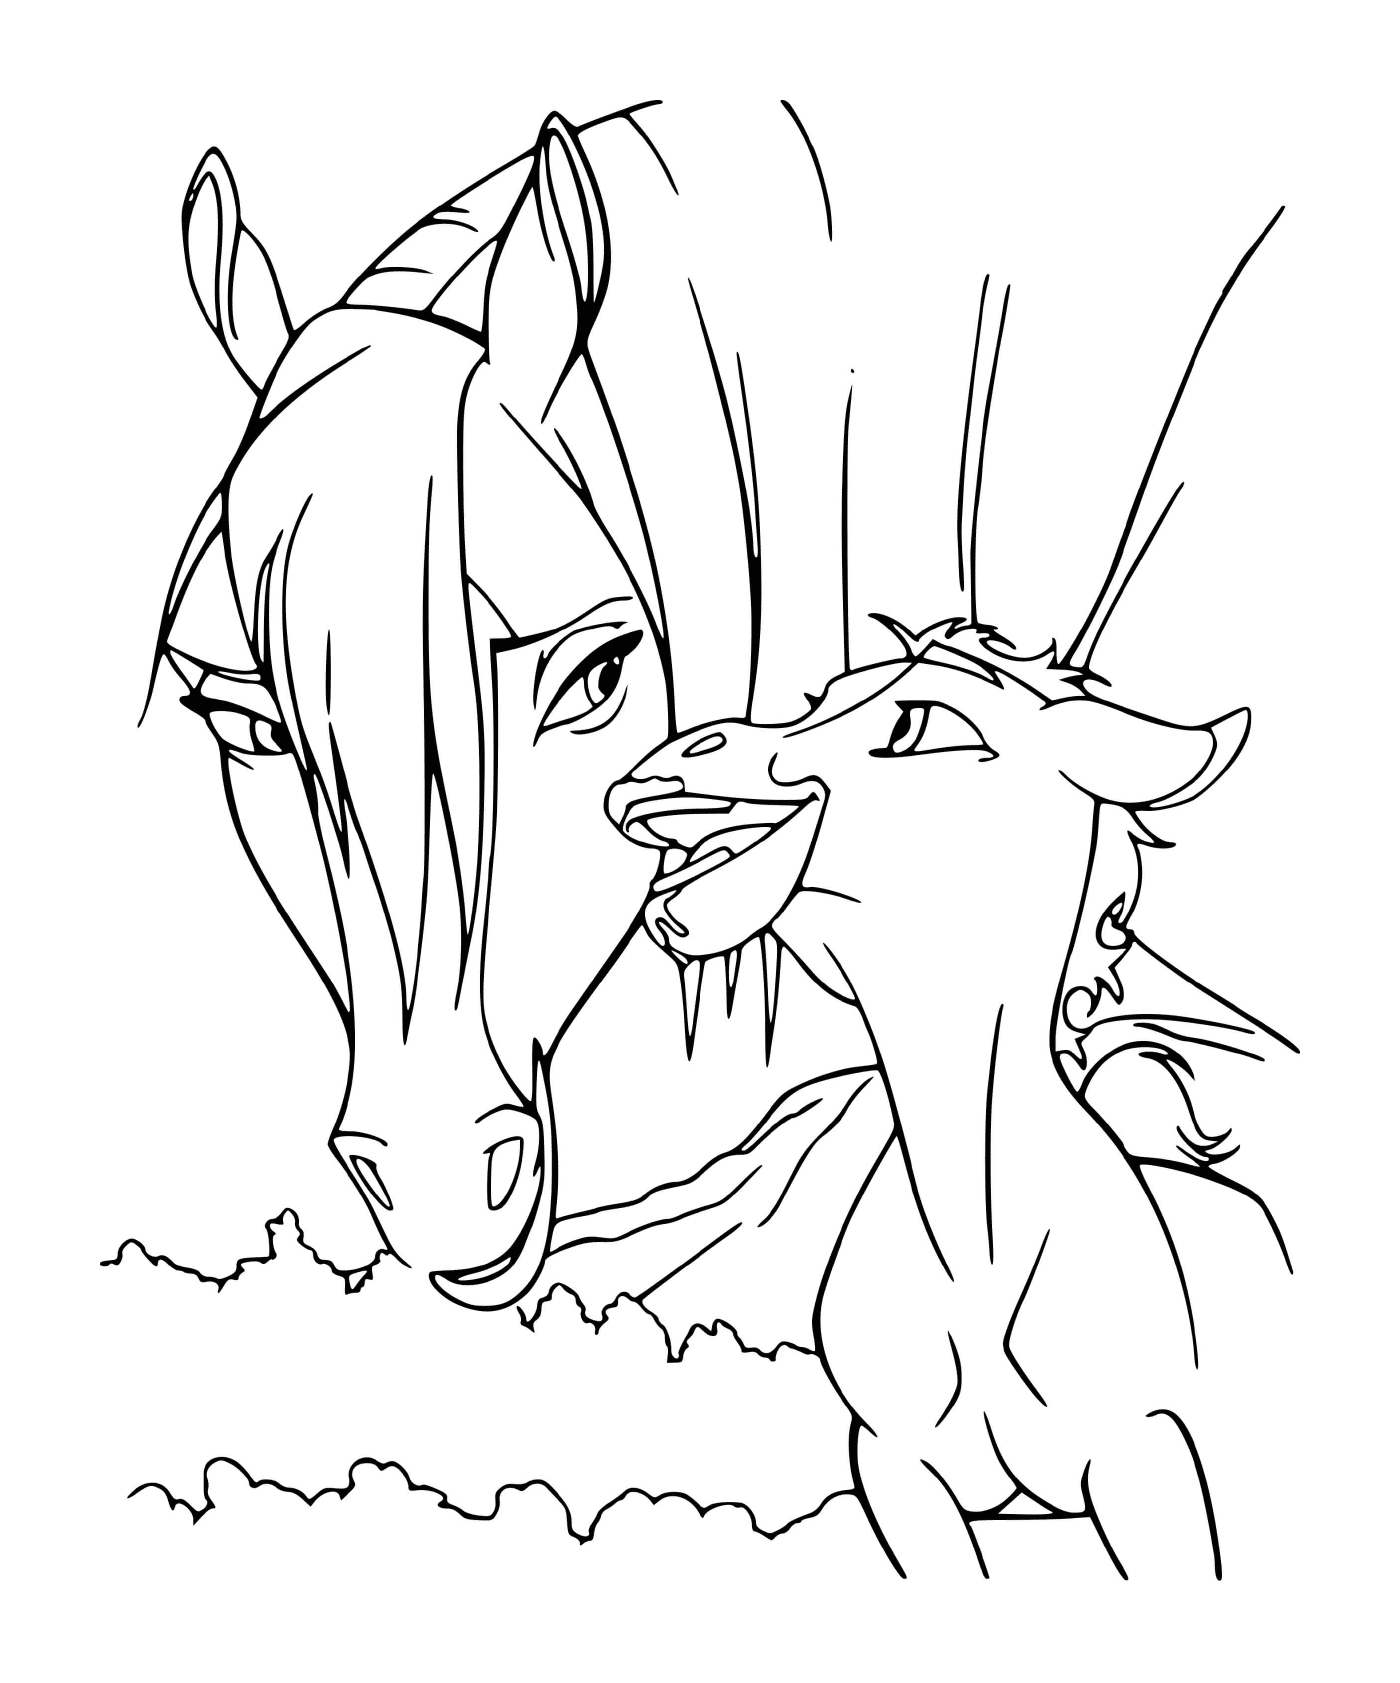  El espíritu y su caballo bebé 